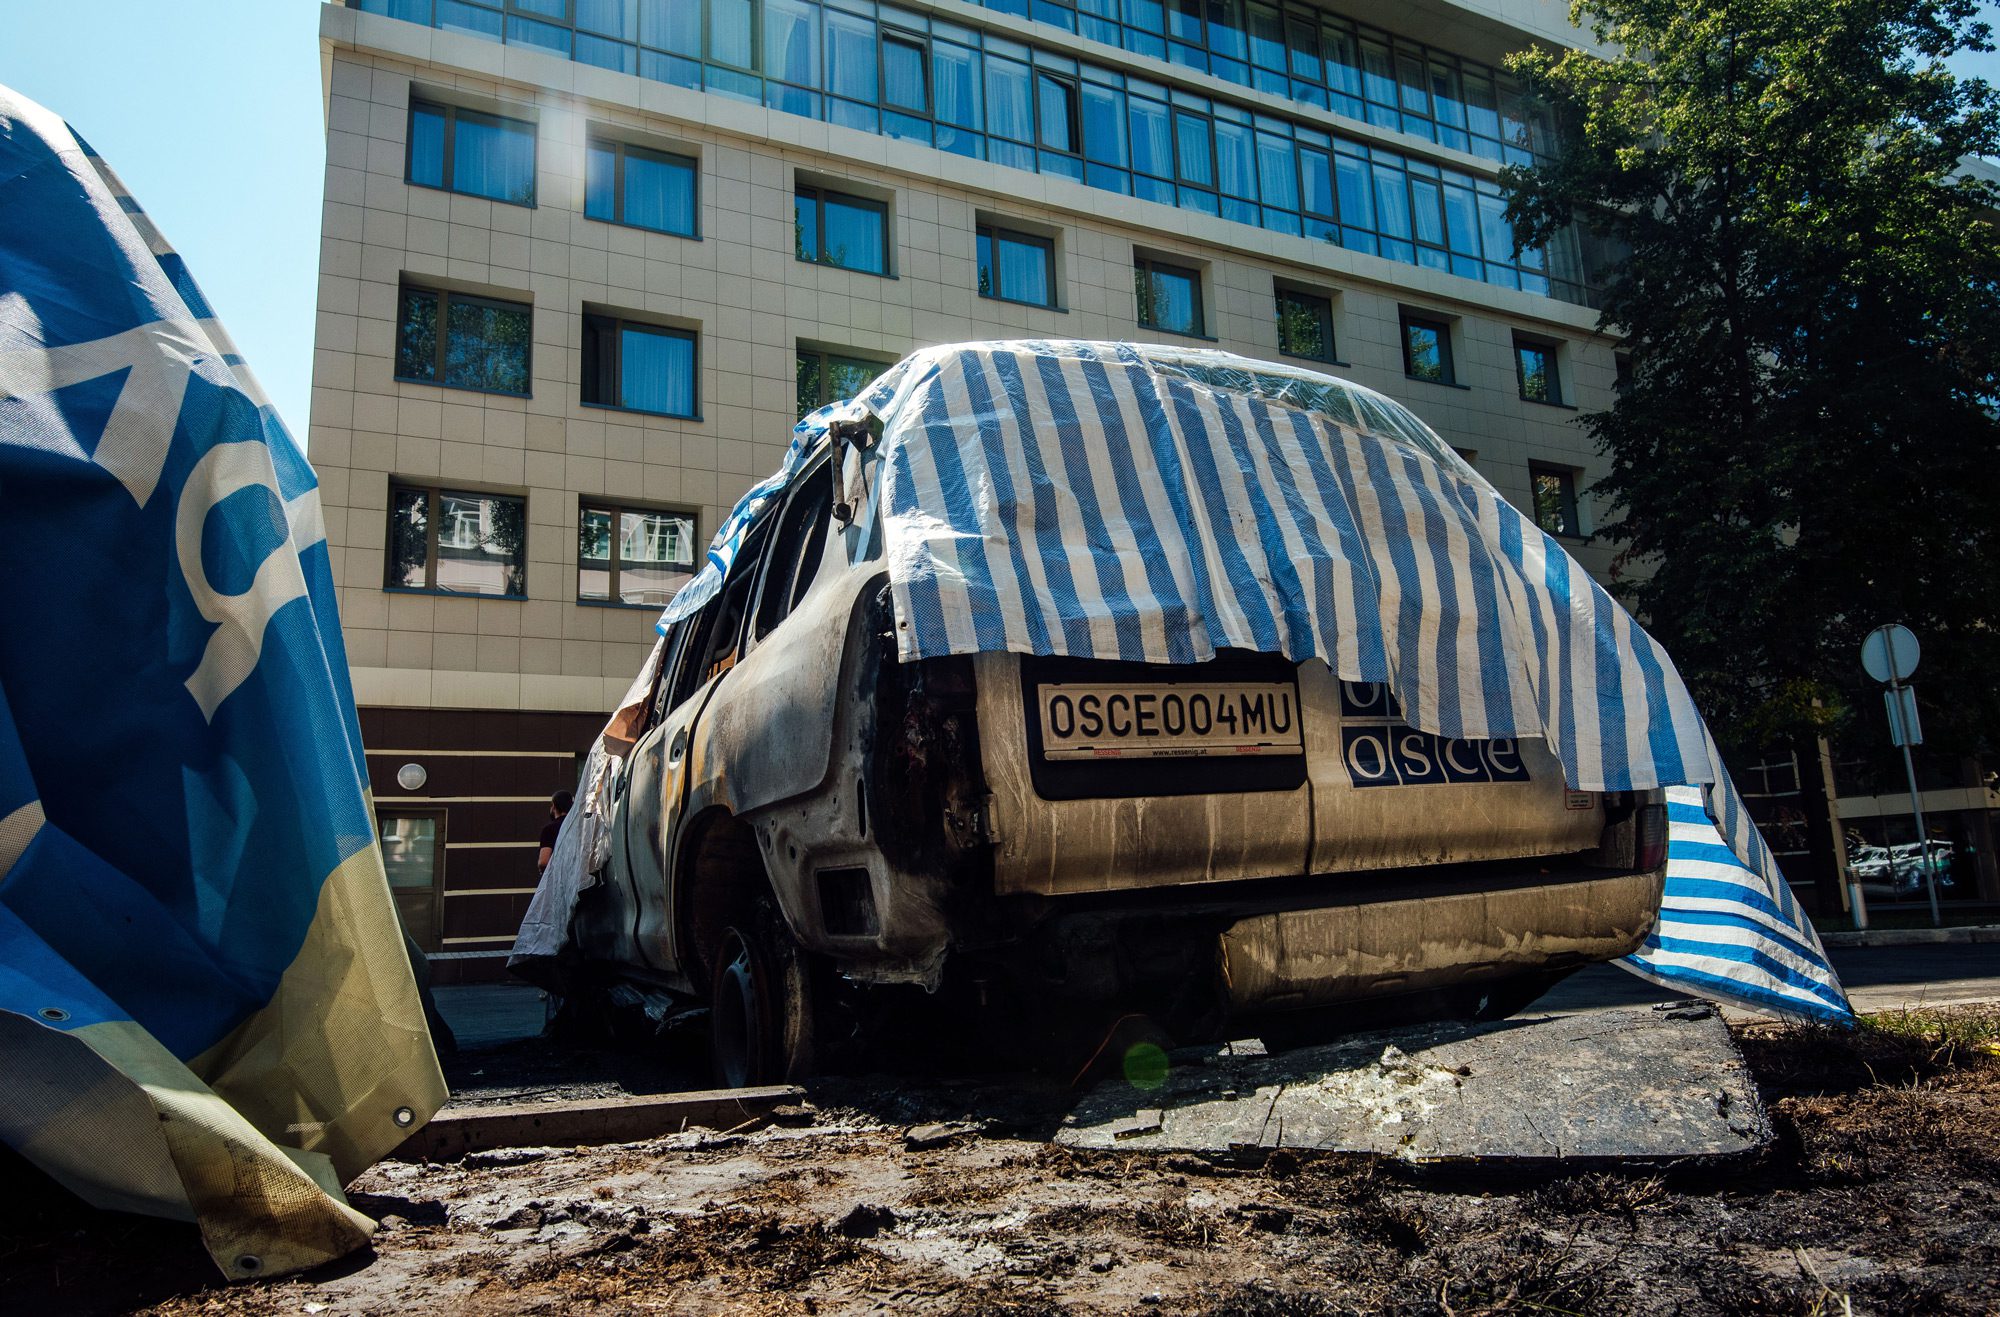 Спалений автомобіль ОБСЄ на стоянці готелю Radisson у Донецьку, 9 серпня 2015 року. Фото: James Sprankle / picture alliance via Getty Images